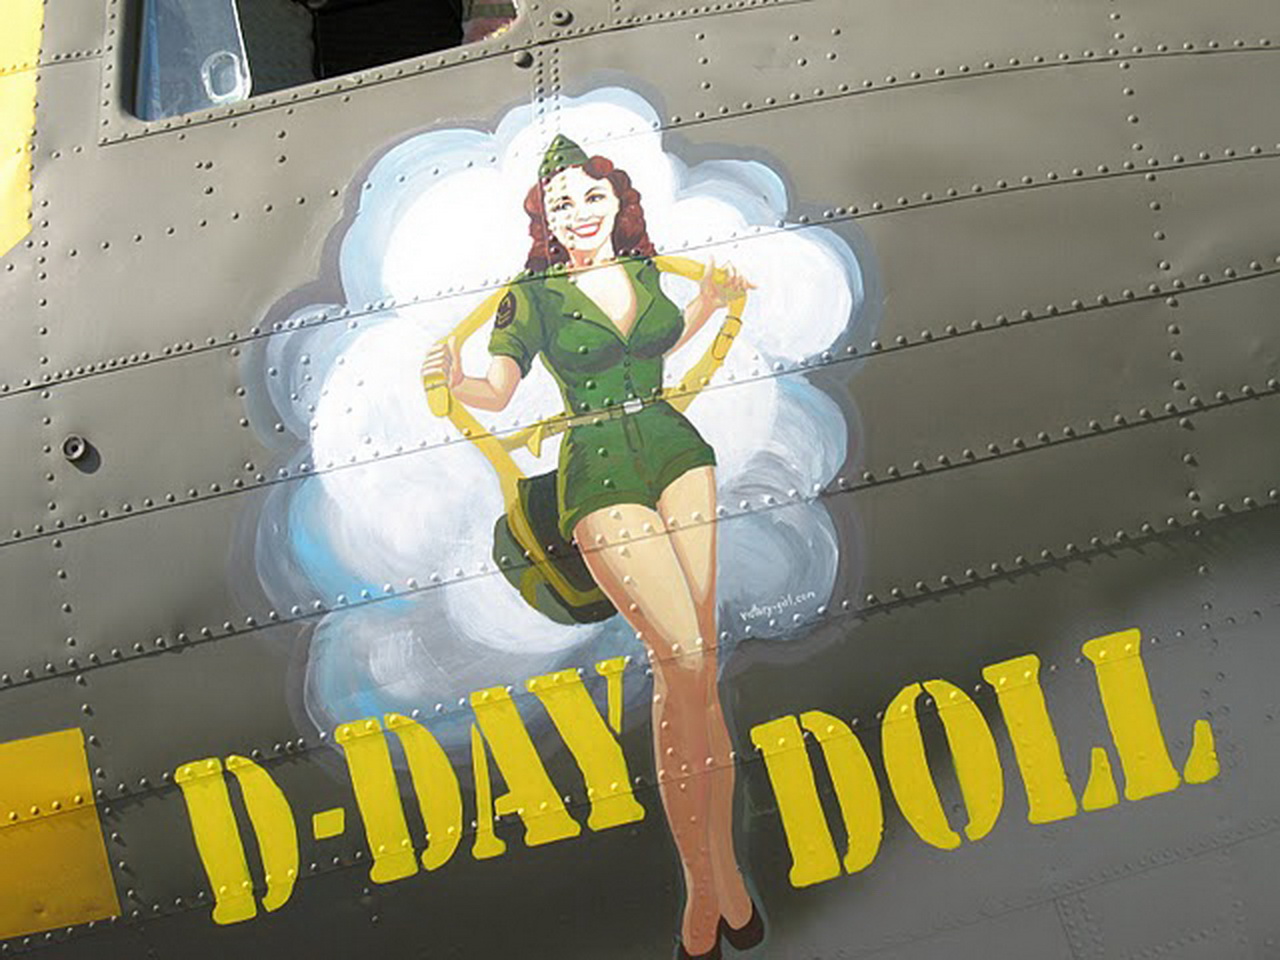 C-53 Aircraft D-day Doll aircraft nose art